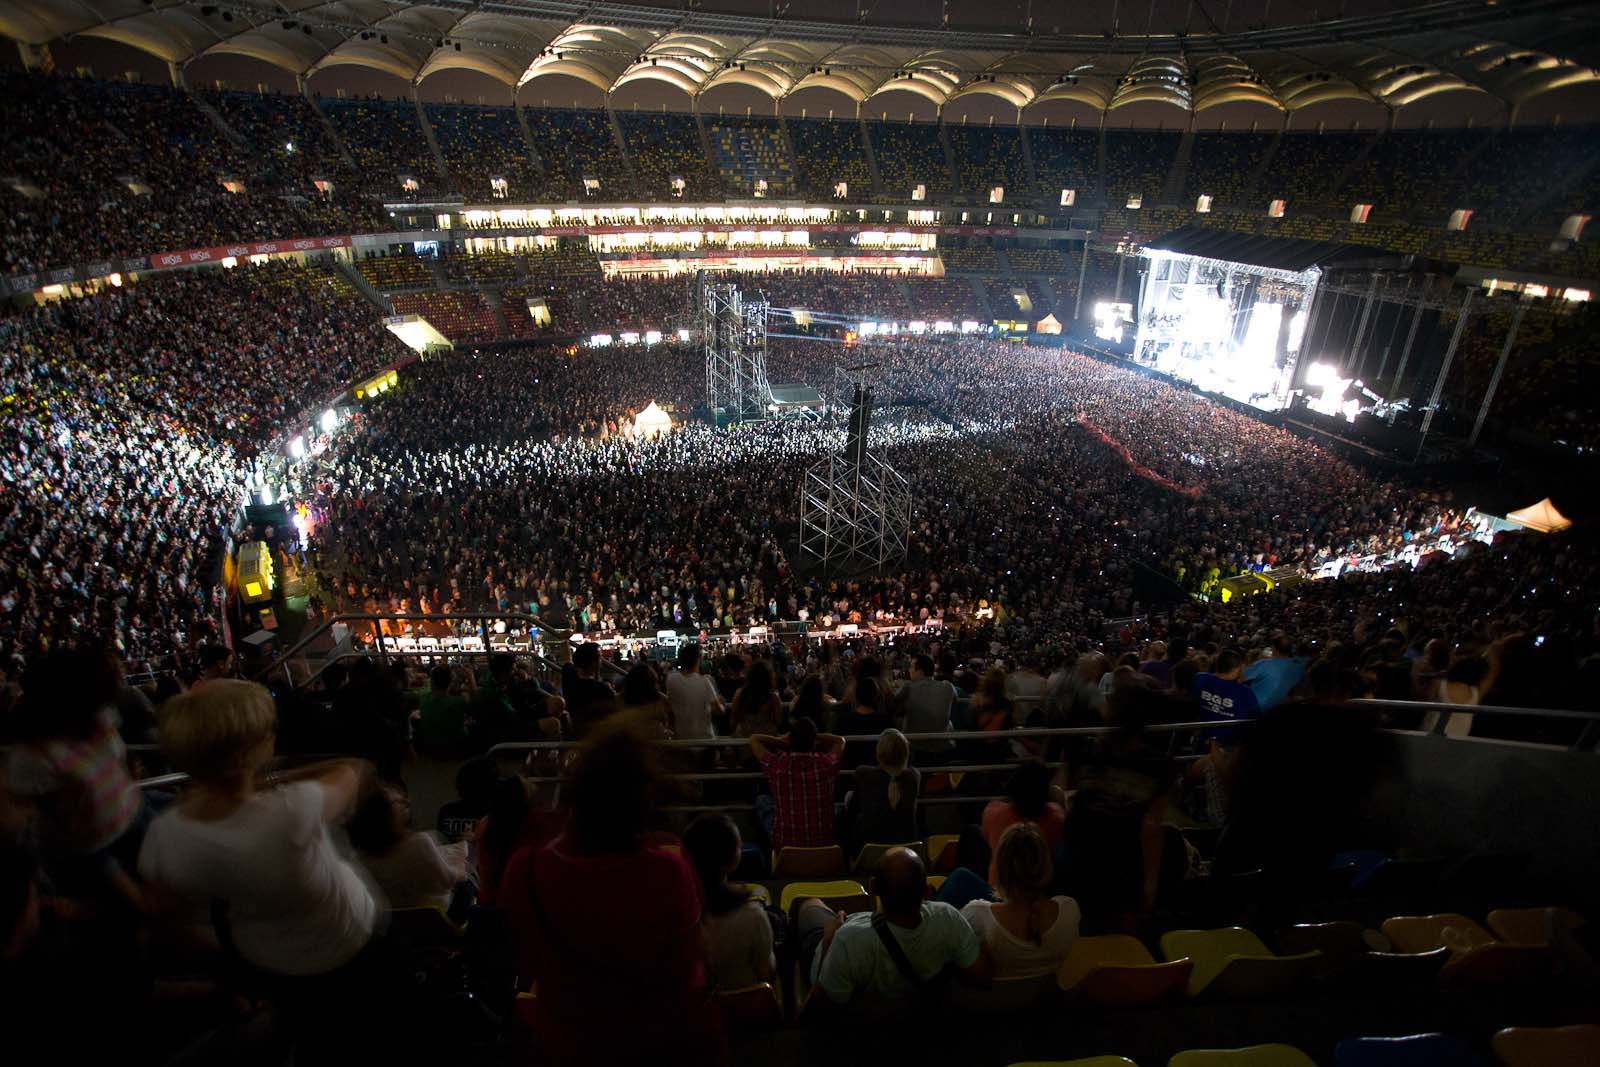 Publicul de pe Arena Nationala la concertul RHCP de pe 31 august 2012 (foto: Alex Chelba)